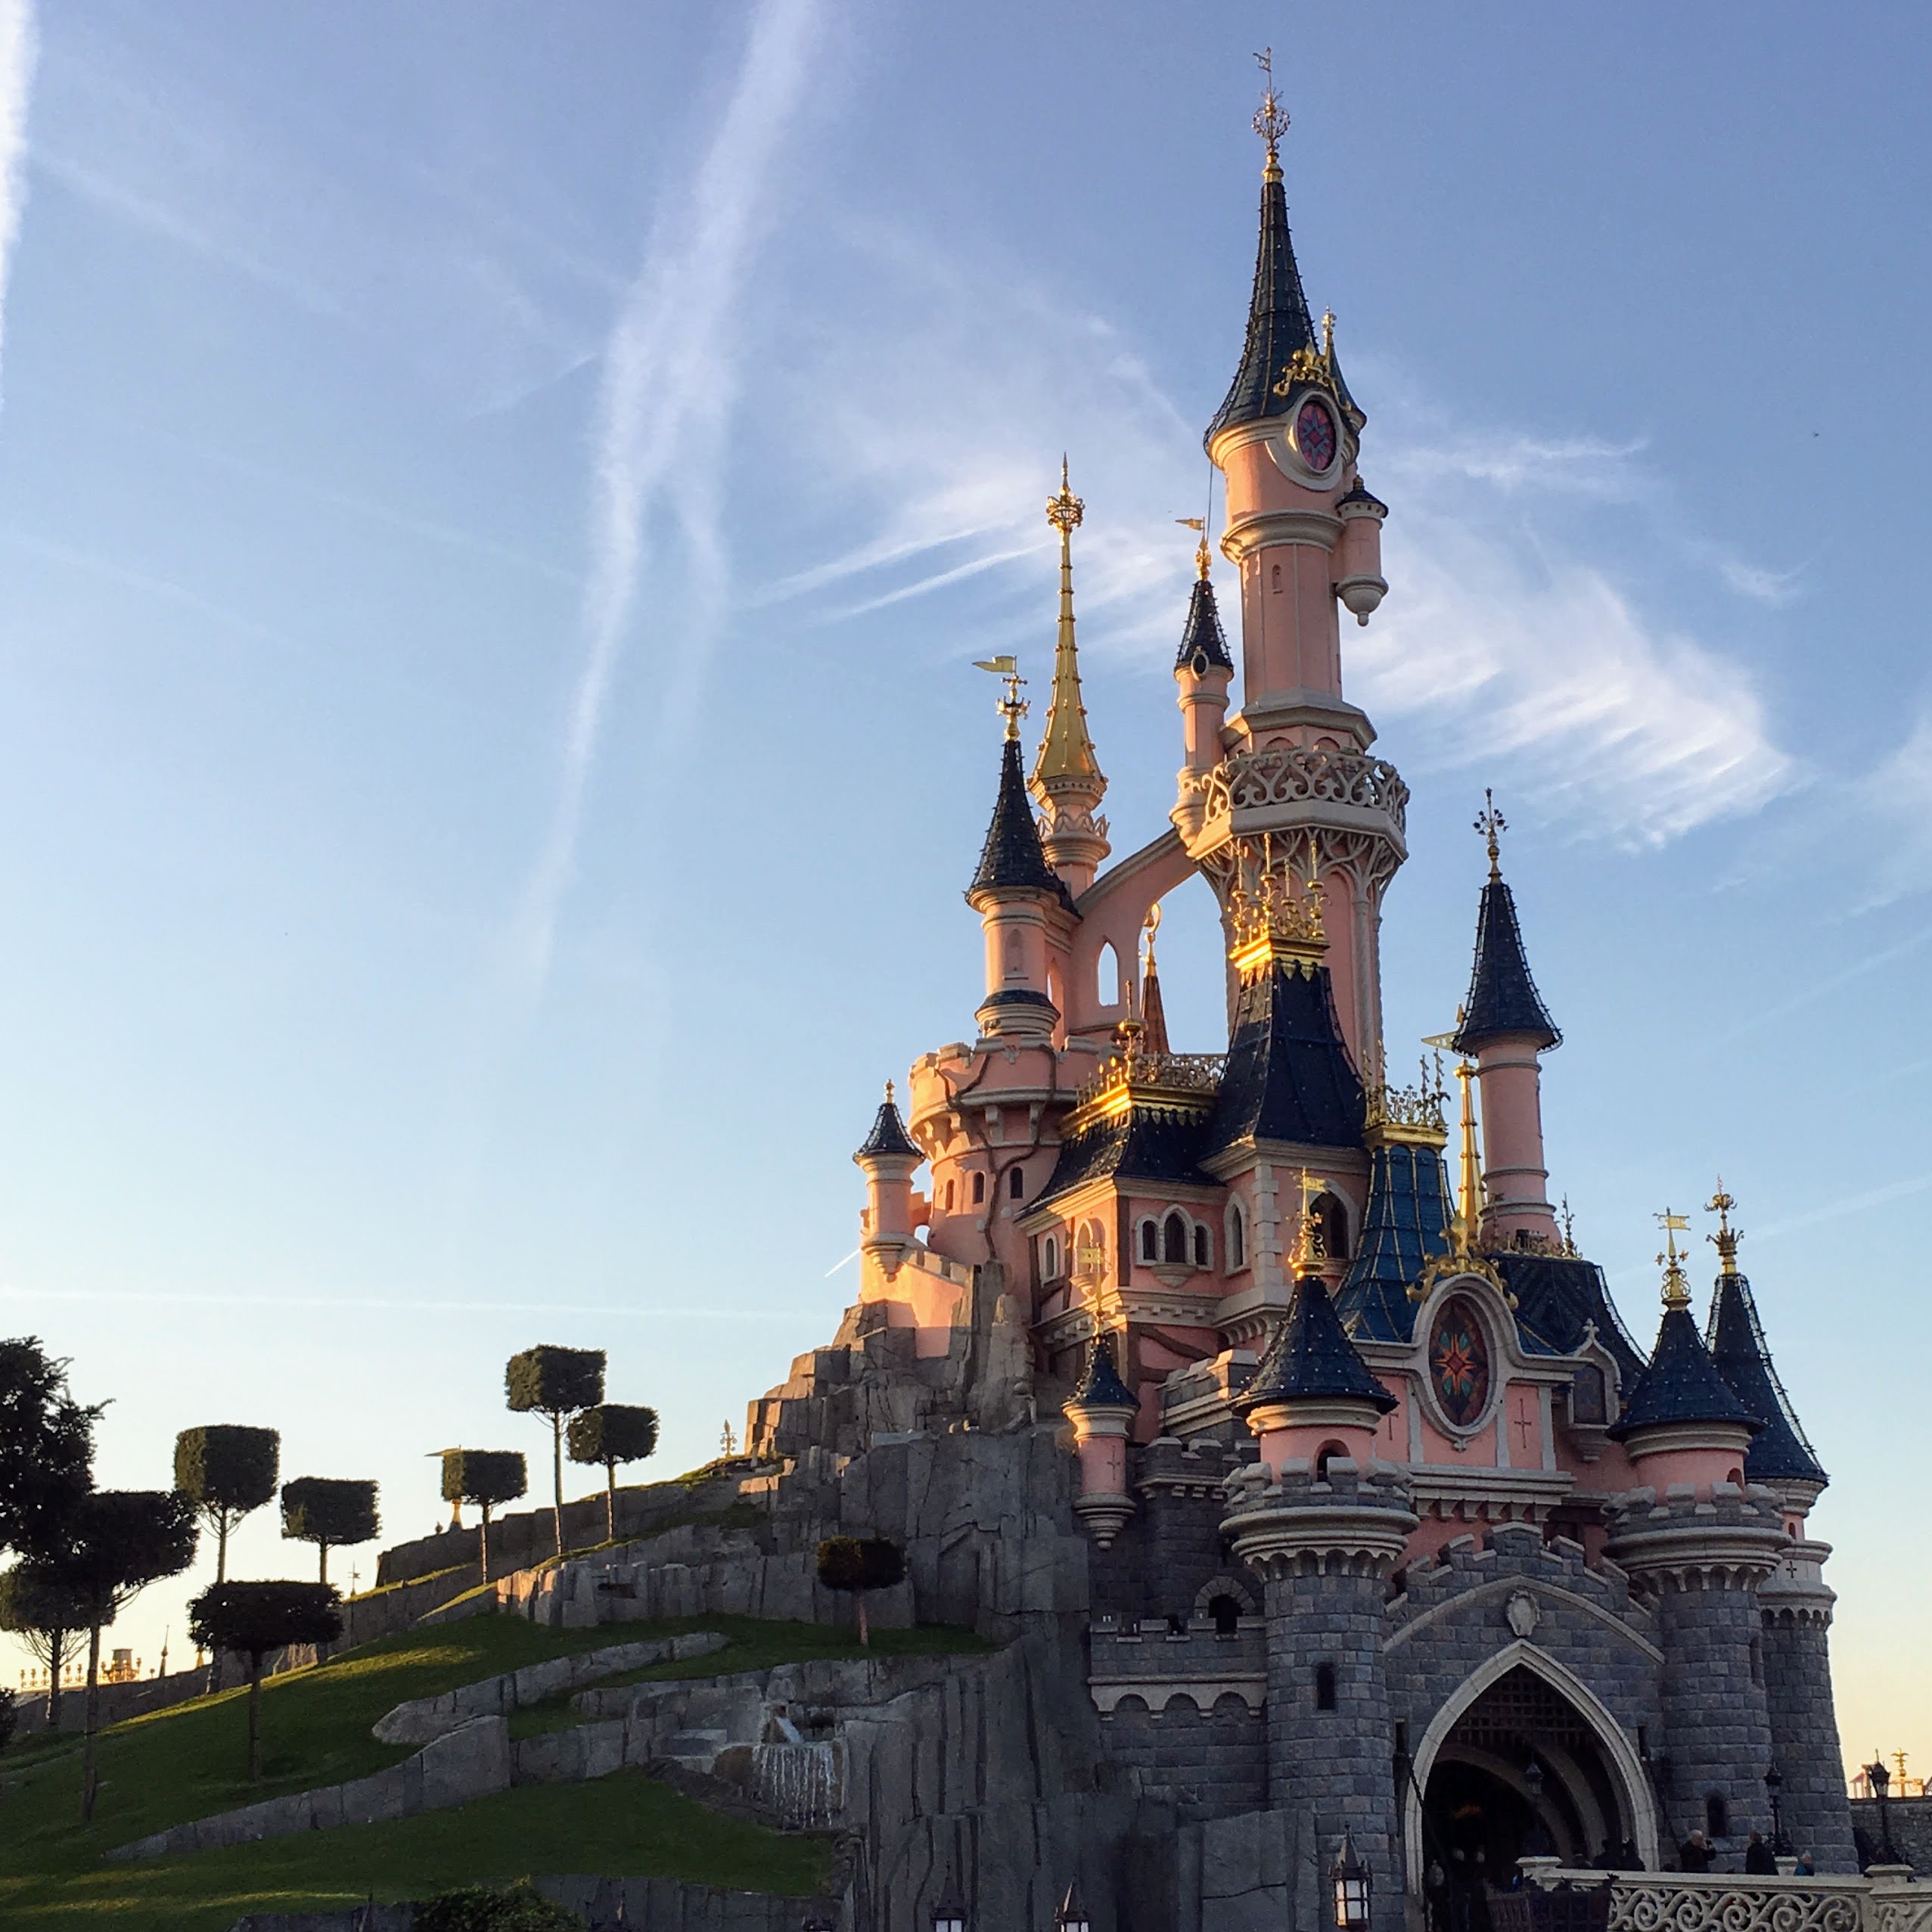 Is Disneyland Paris worth visiting? | asthejoeflies